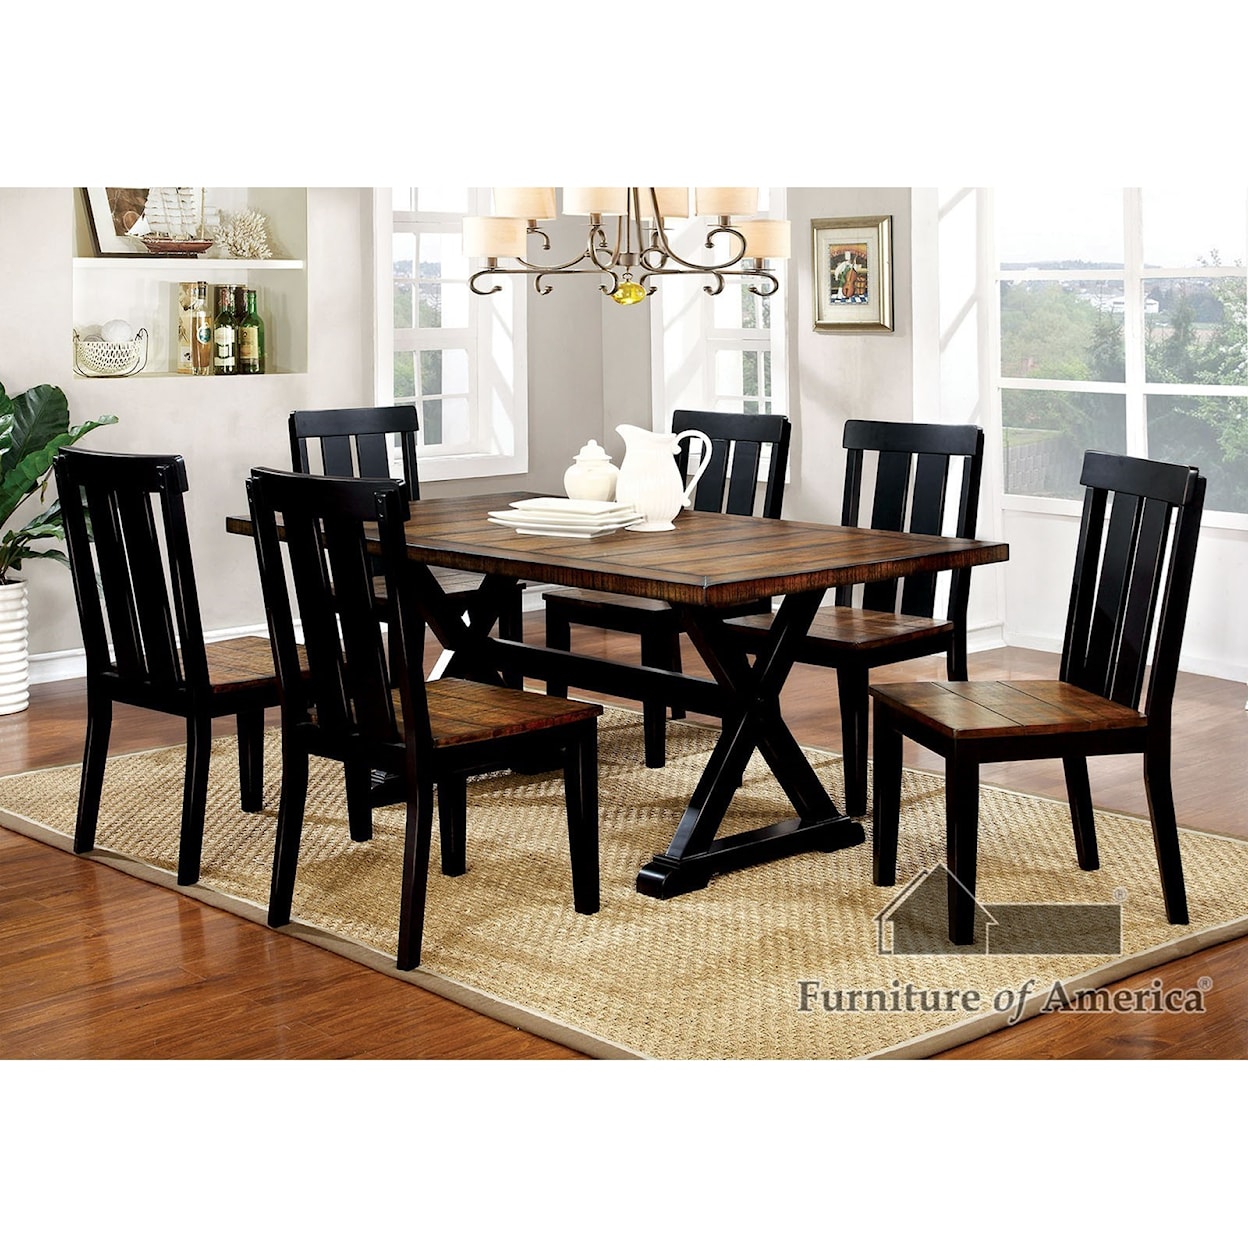 Furniture of America - FOA Alana Dining Table